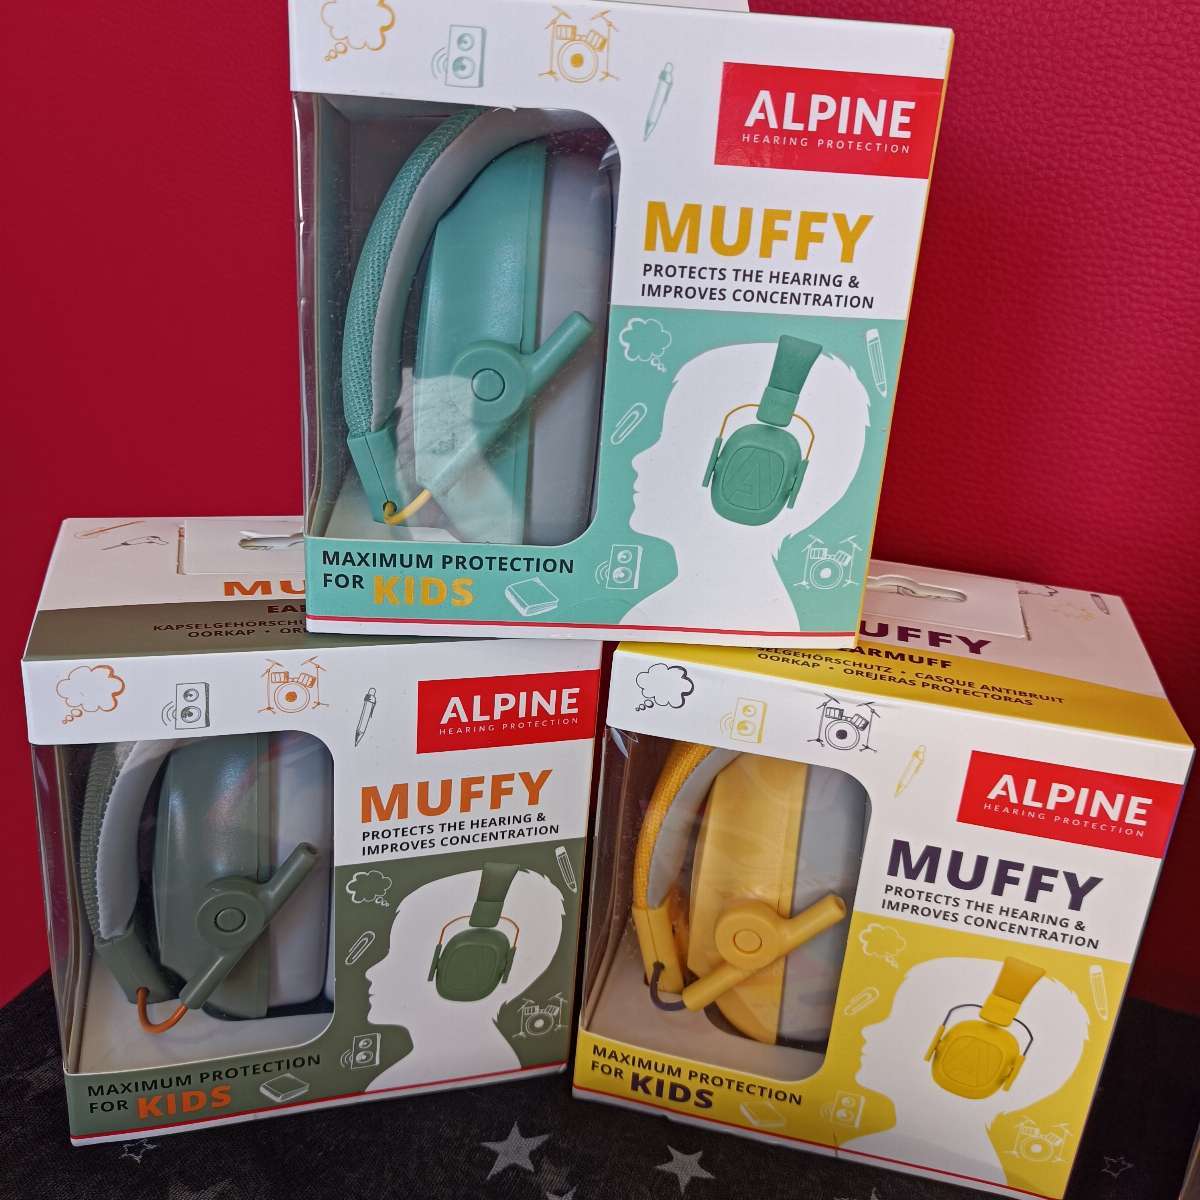 Alpine Muffy Baby - Casque anti-bruit bandeau pour bébé -23dB Jaune